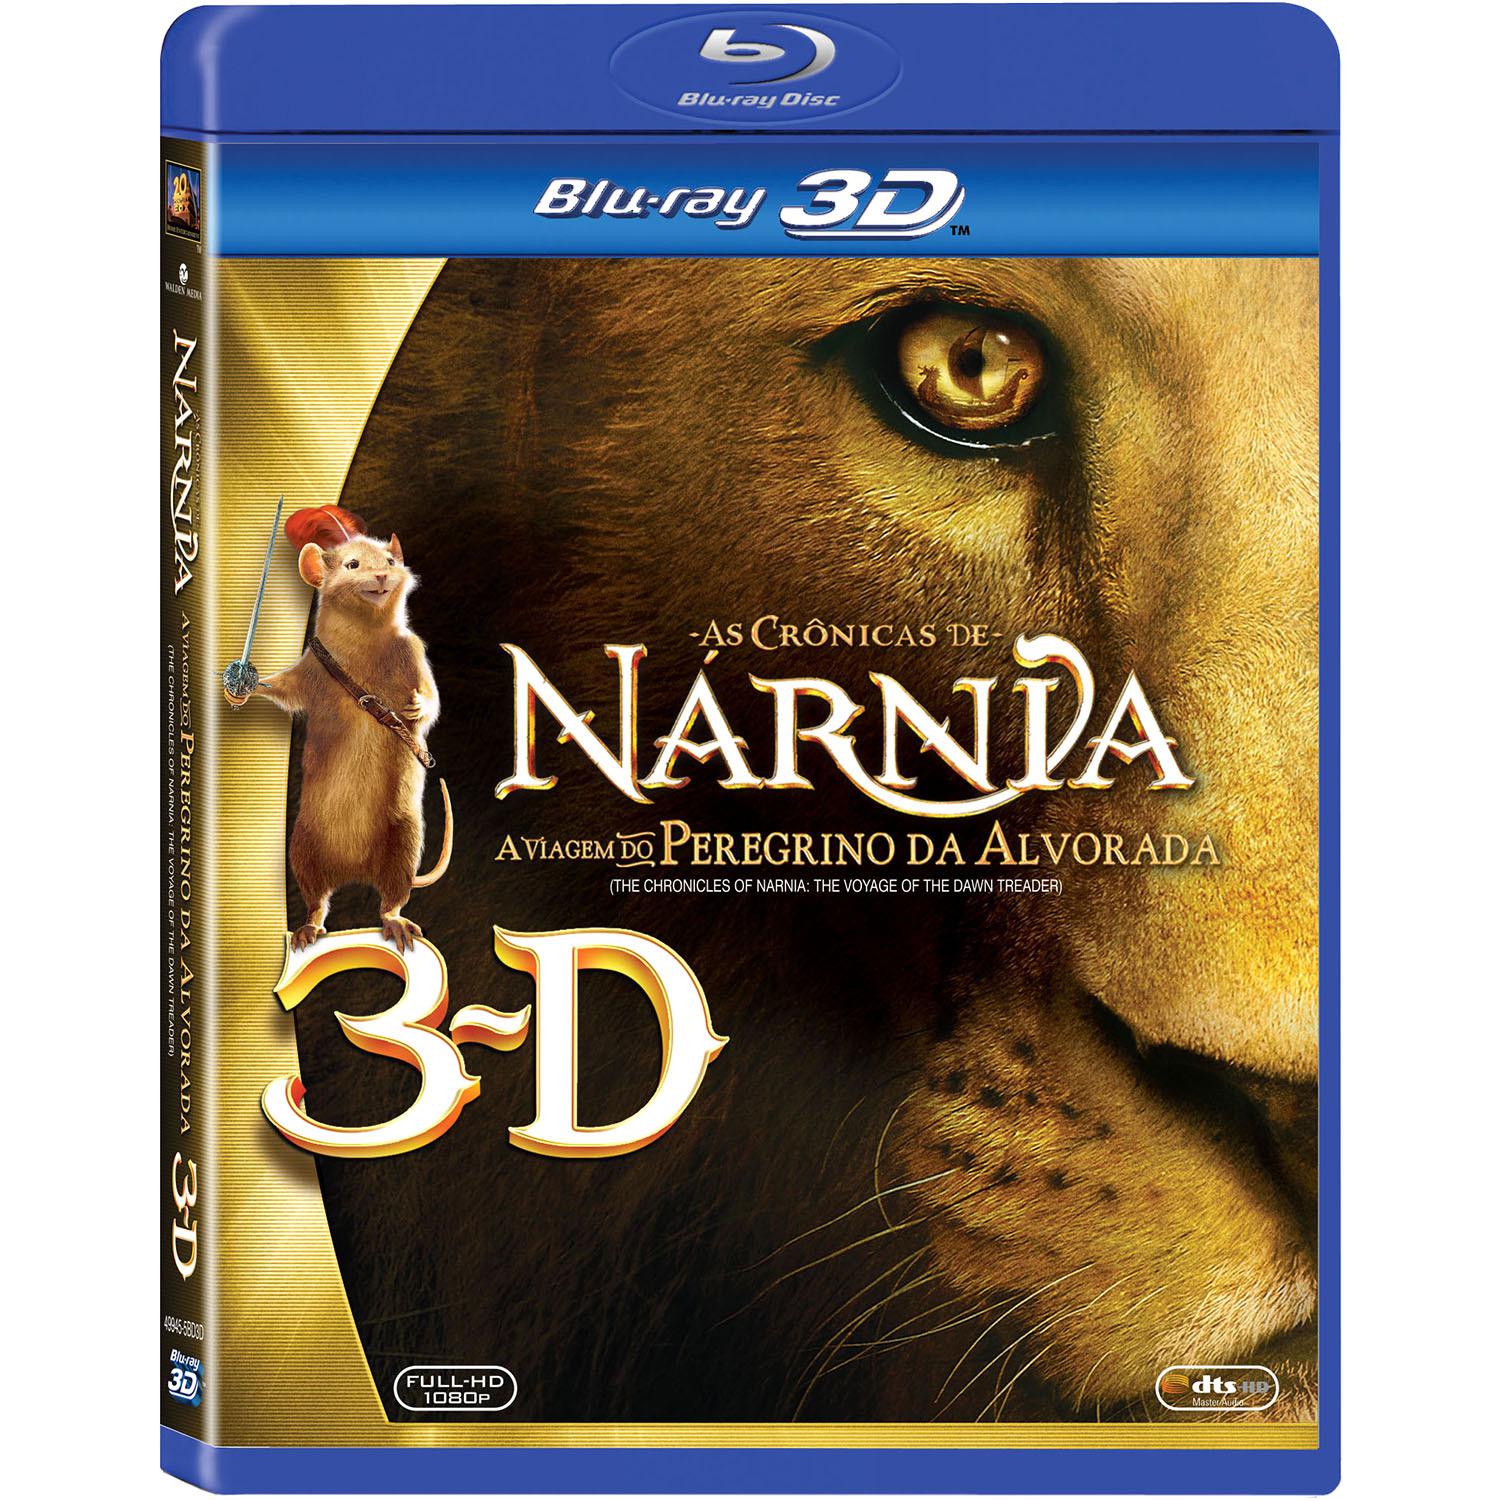 Blu-Ray 3D - As Crônicas de Nárnia - A Viagem do Peregrino da Alvorada é bom? Vale a pena?